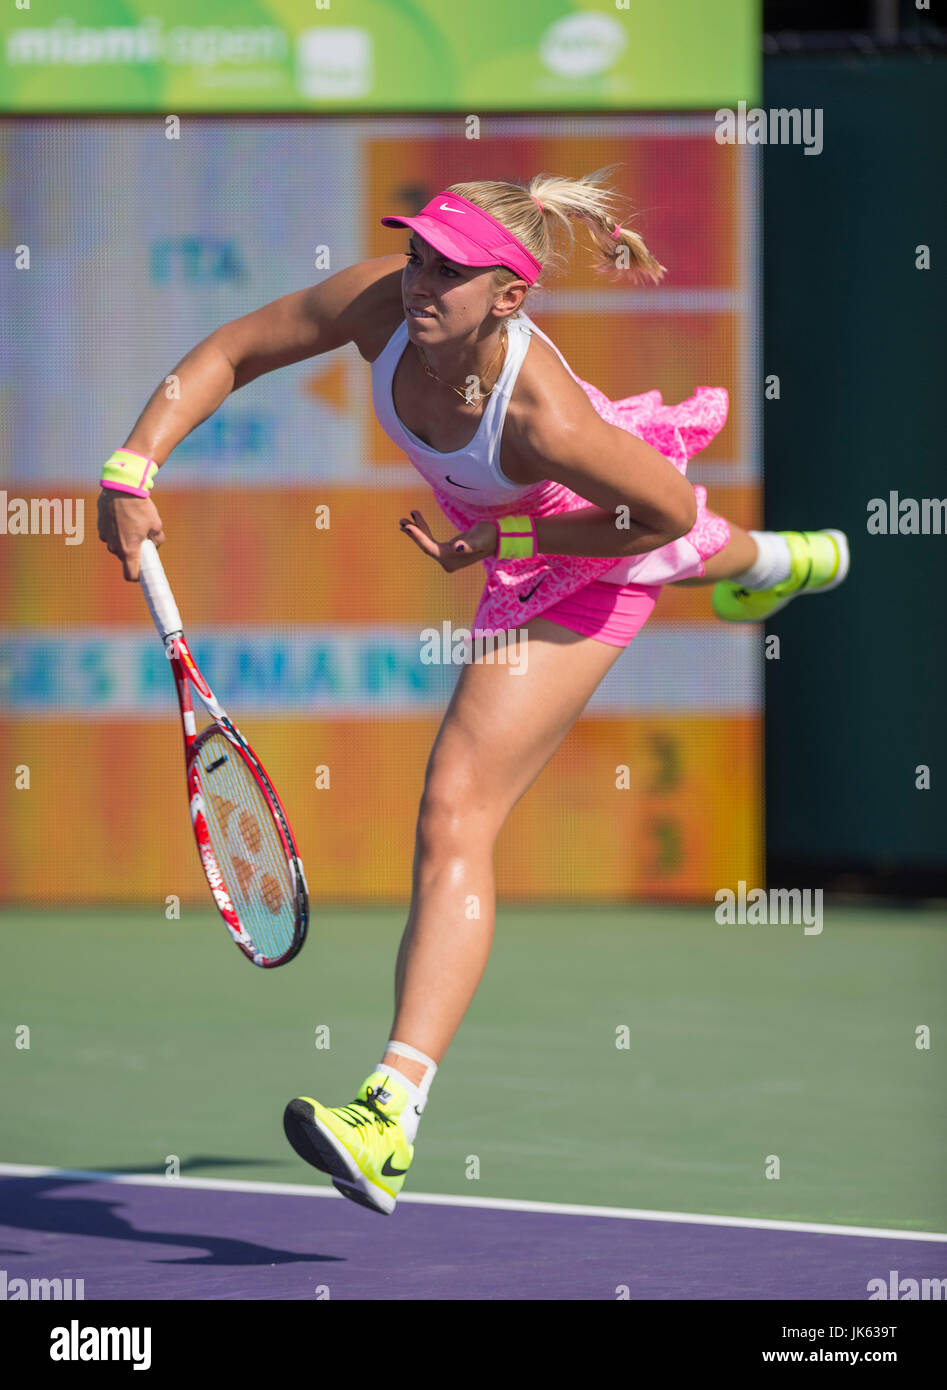 KEY BISCAYNE, Floride - 30 Mars : Sabine Lisicki (GER) en action ici bat Sara Errani (ITA) 6162 2015 à l'Open de Miami au Crandon Tennis Center de Key Biscayne en Floride. Patron/MediaPunch photographe Andrew Banque D'Images